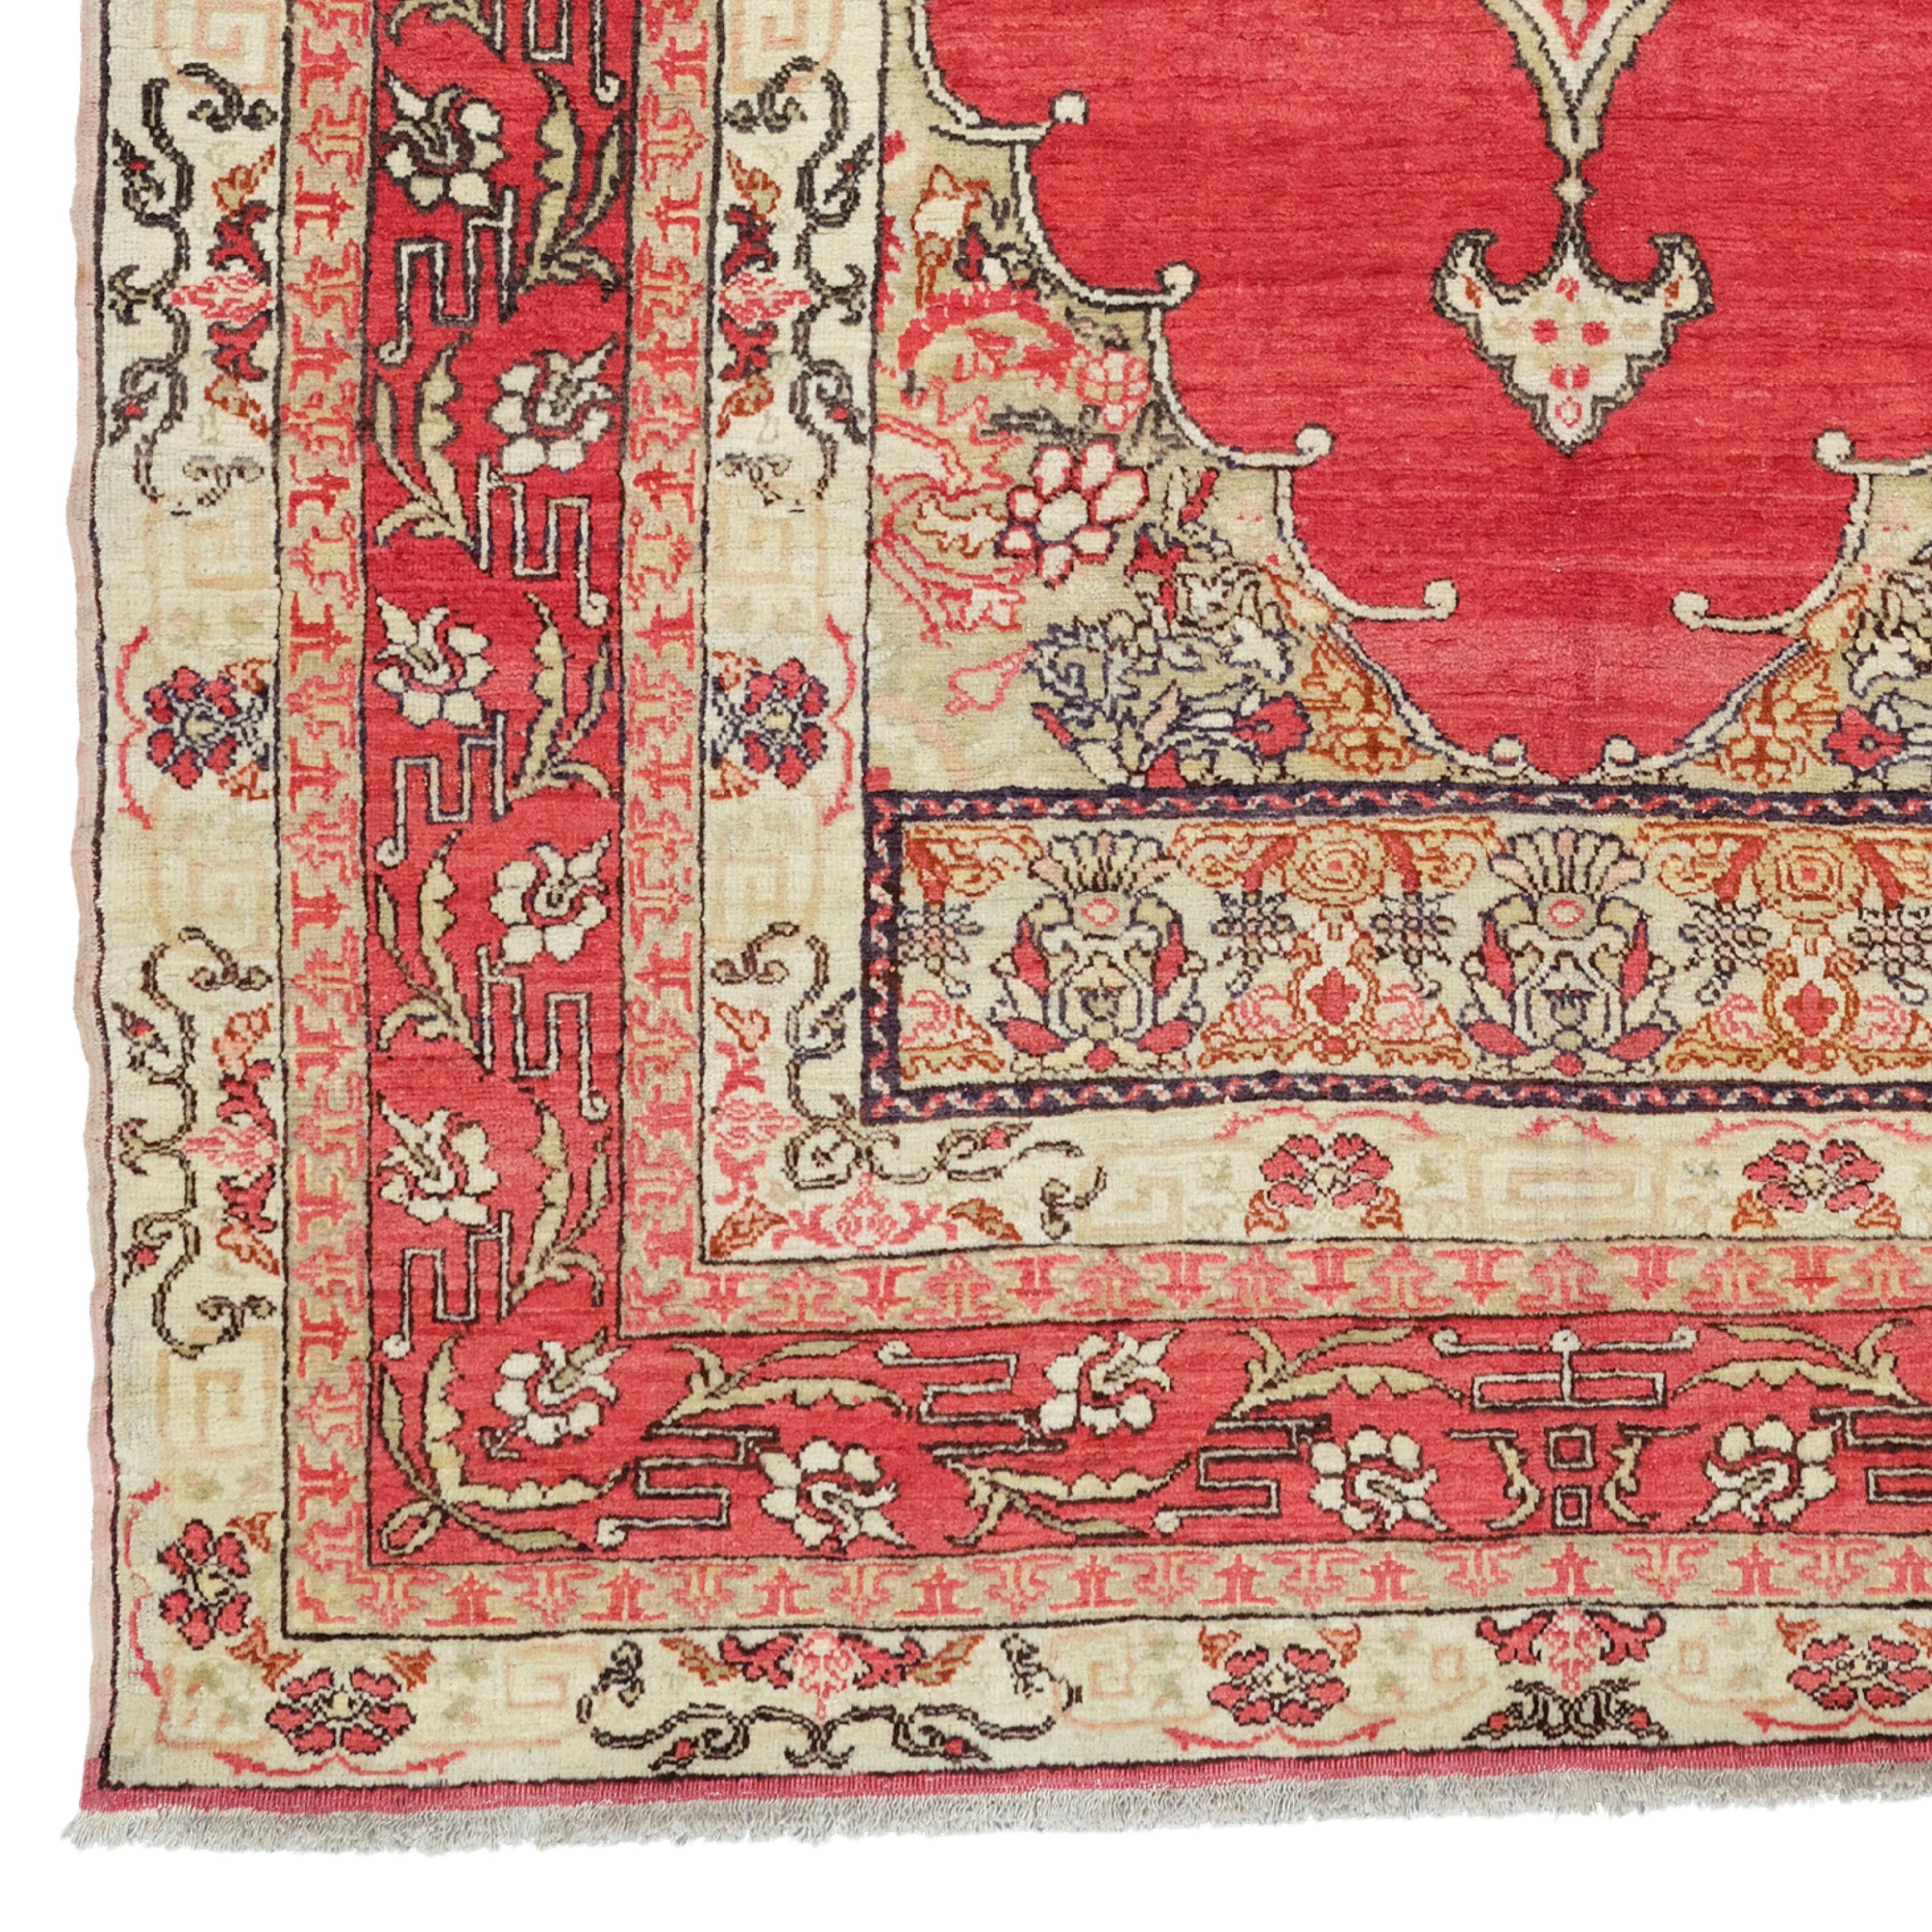 Antiker türkischer Fertek-Teppich
Fertek-Teppich aus dem 19.  Größe: 130x212 cm

Es handelt sich um eine Teppichart, die im 19. Jahrhundert als türkischer Fertek-Teppich bekannt war.

Farben und Muster: Dieser Teppich zeigt eine Vielzahl von